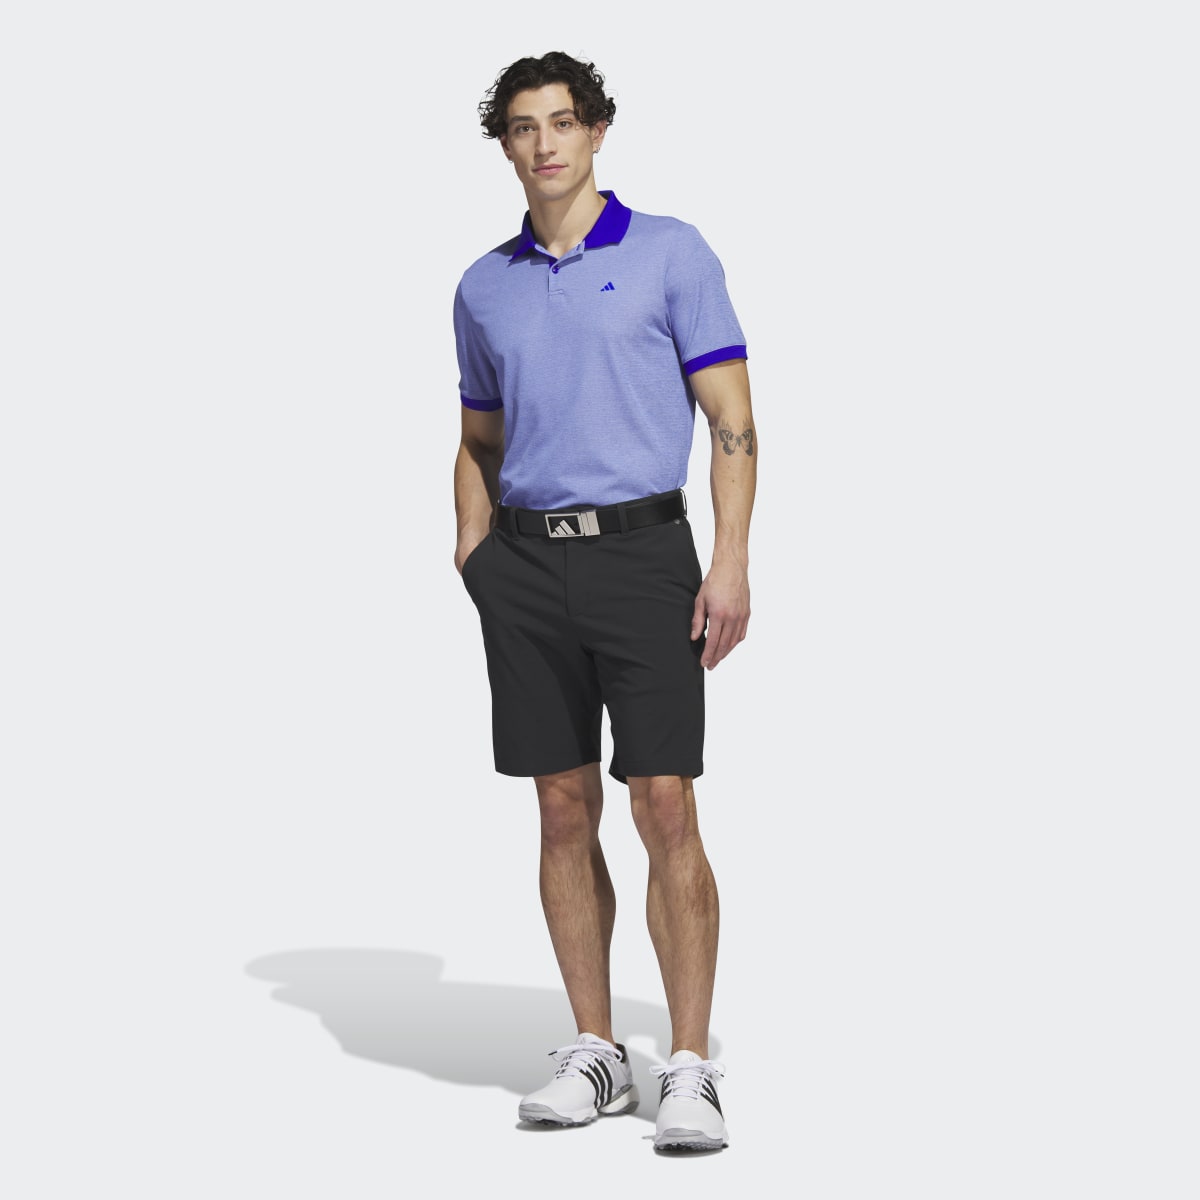 Adidas Ultimate365 No-Show Golf Polo Shirt. 11